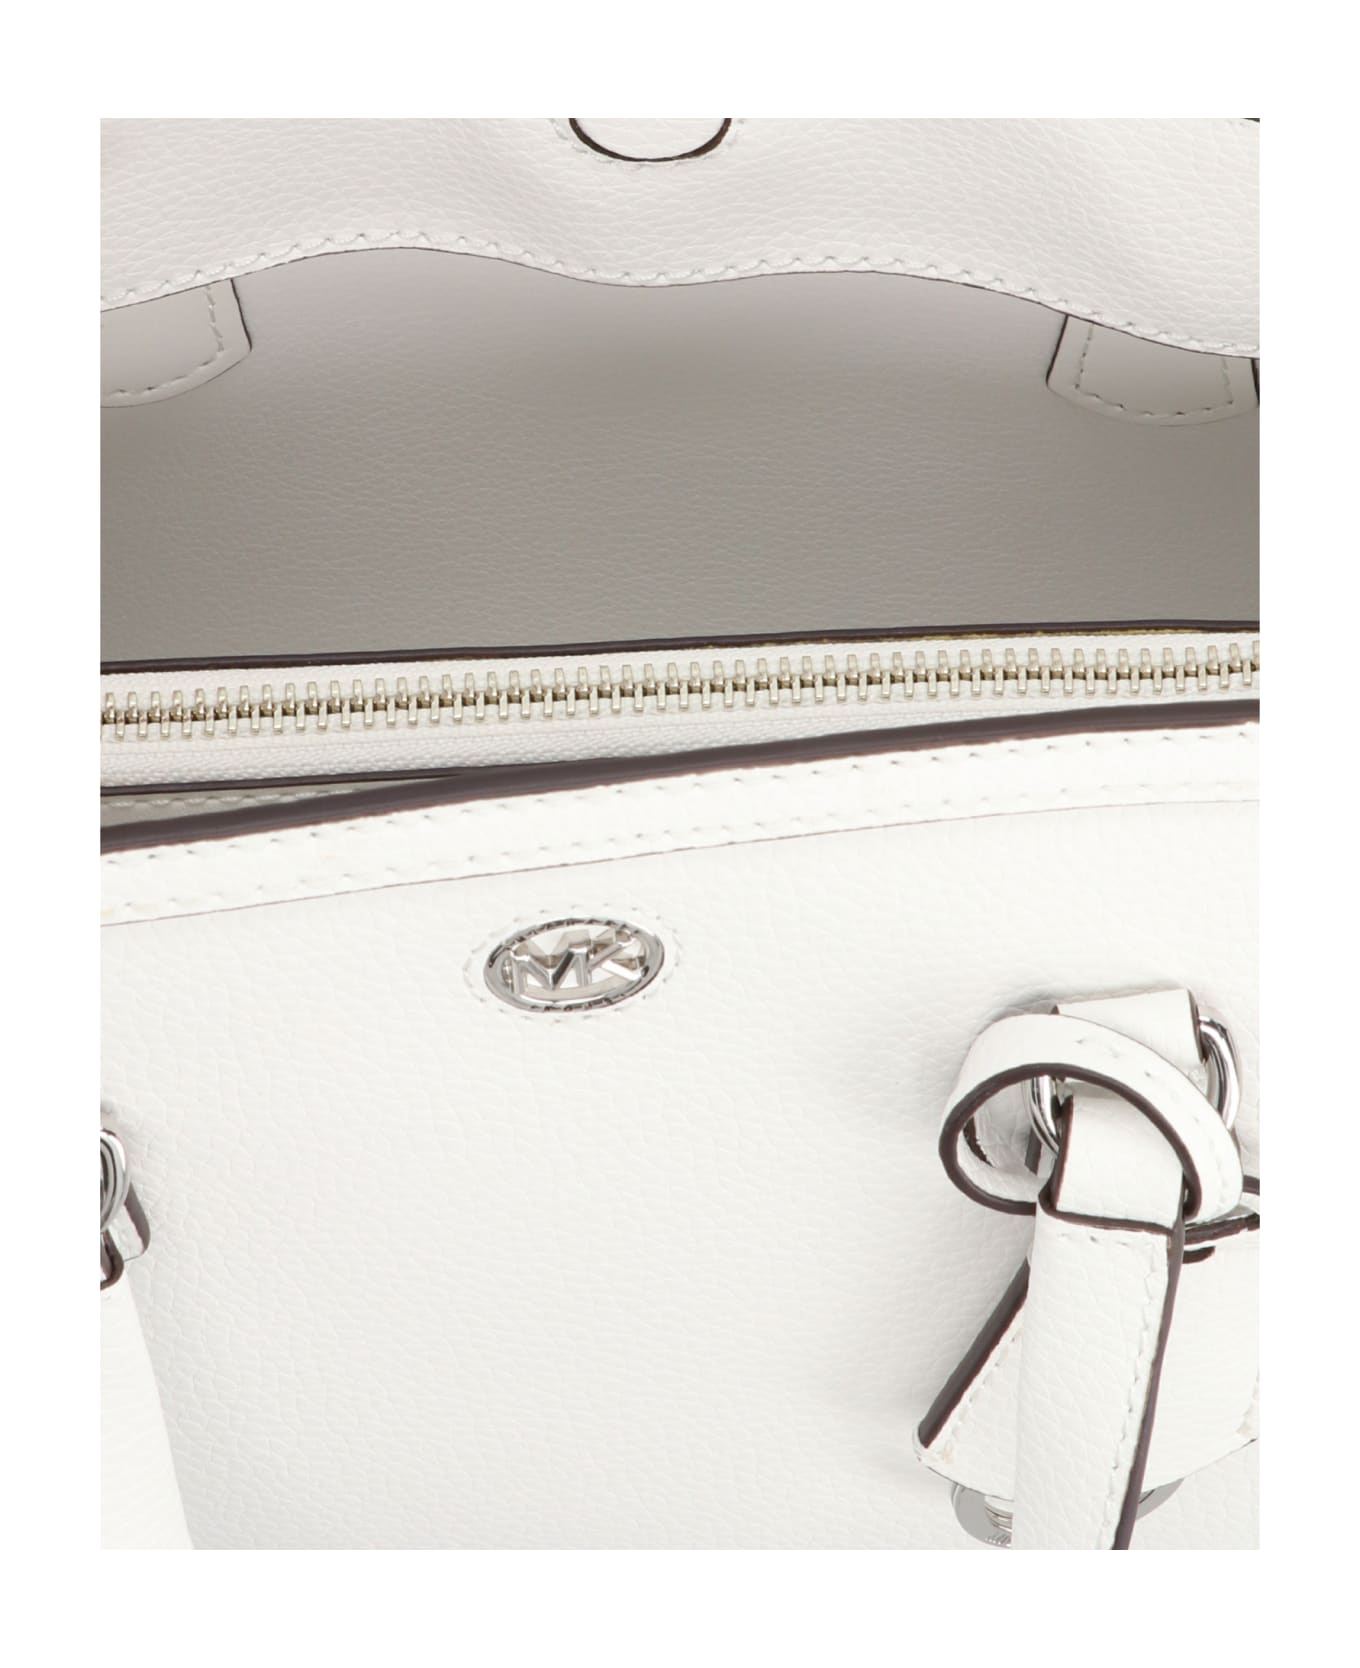 Michael Kors 'crocal' Small Handbag - White